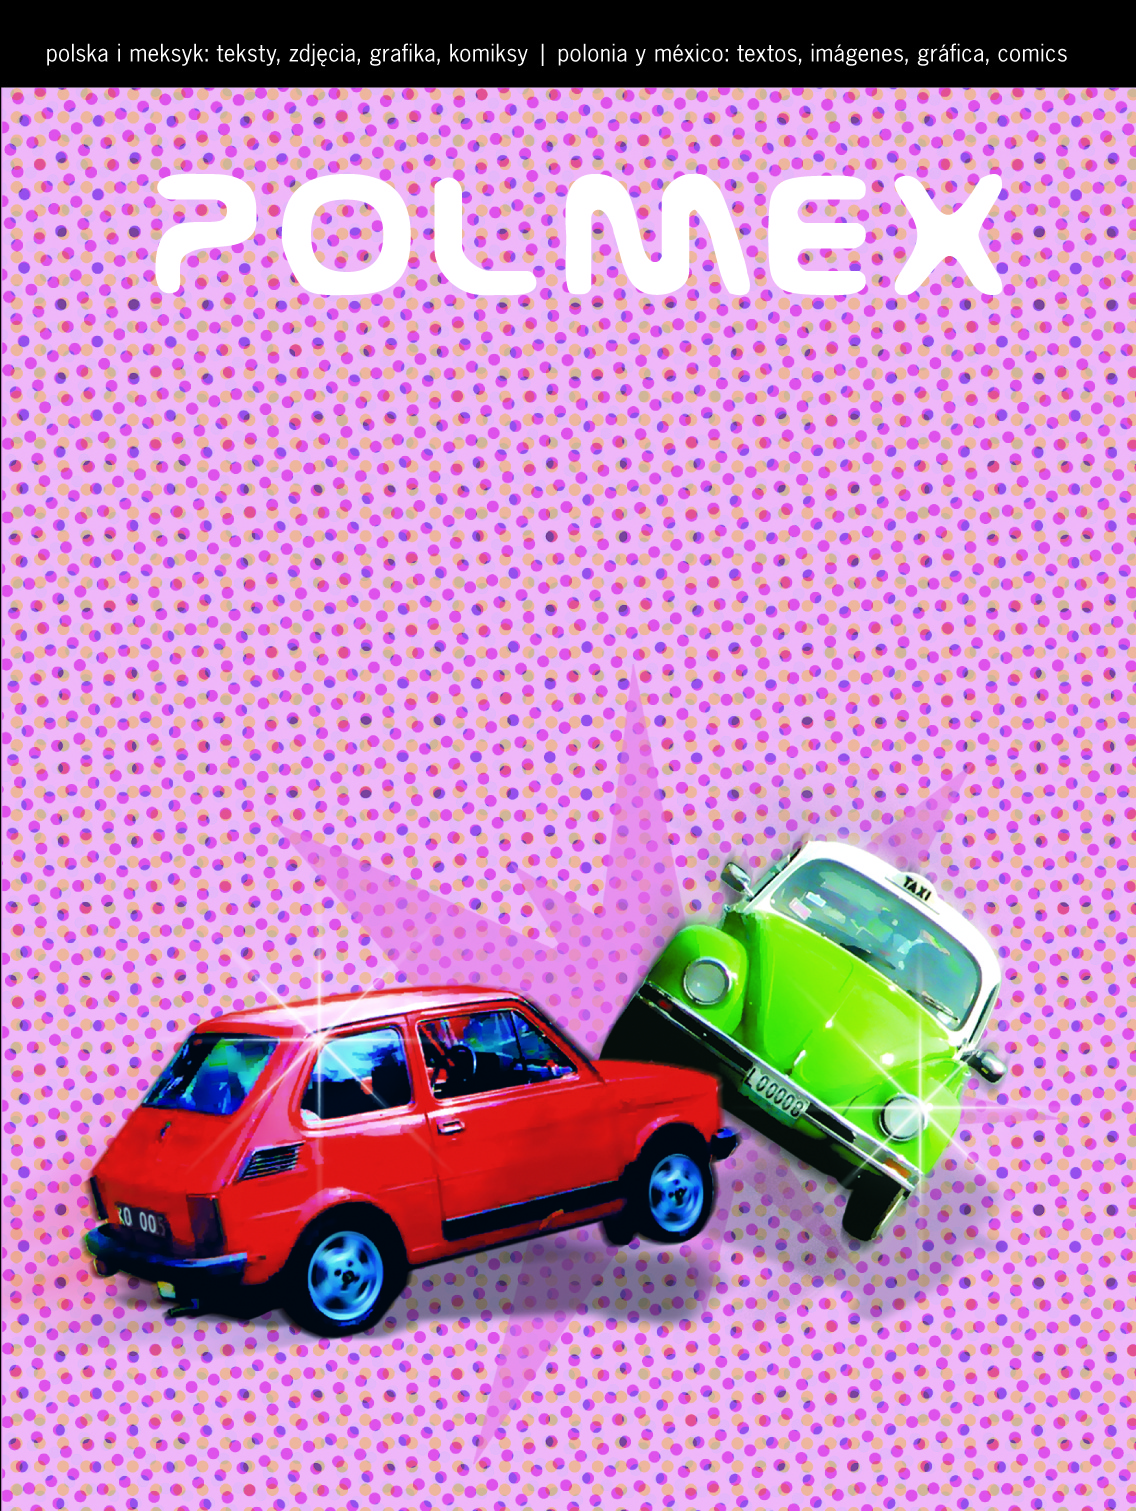 PolMex